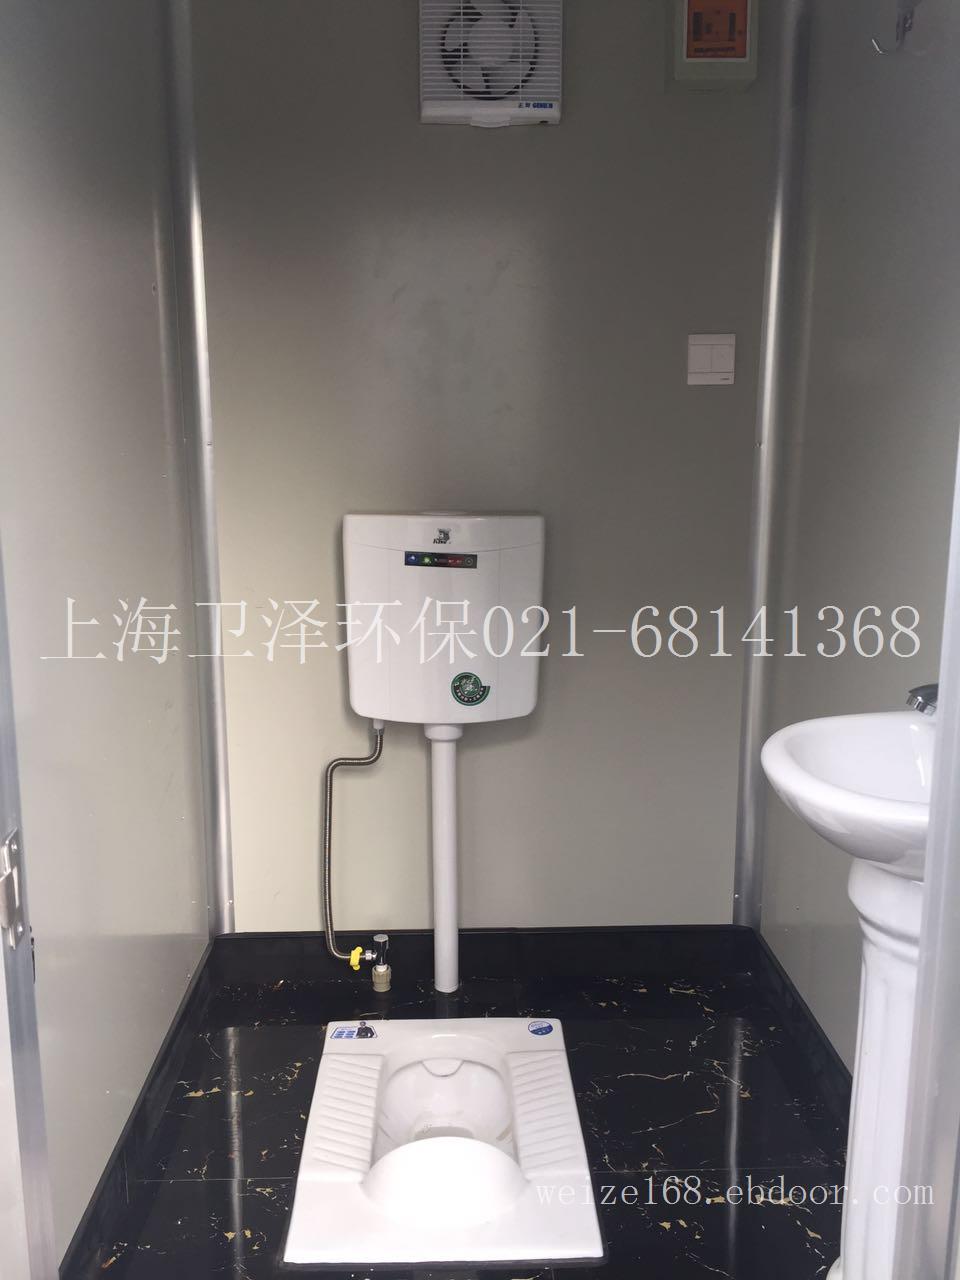 上海新场古镇环保流动厕所出售 枫泾古镇生态移动卫生间销售